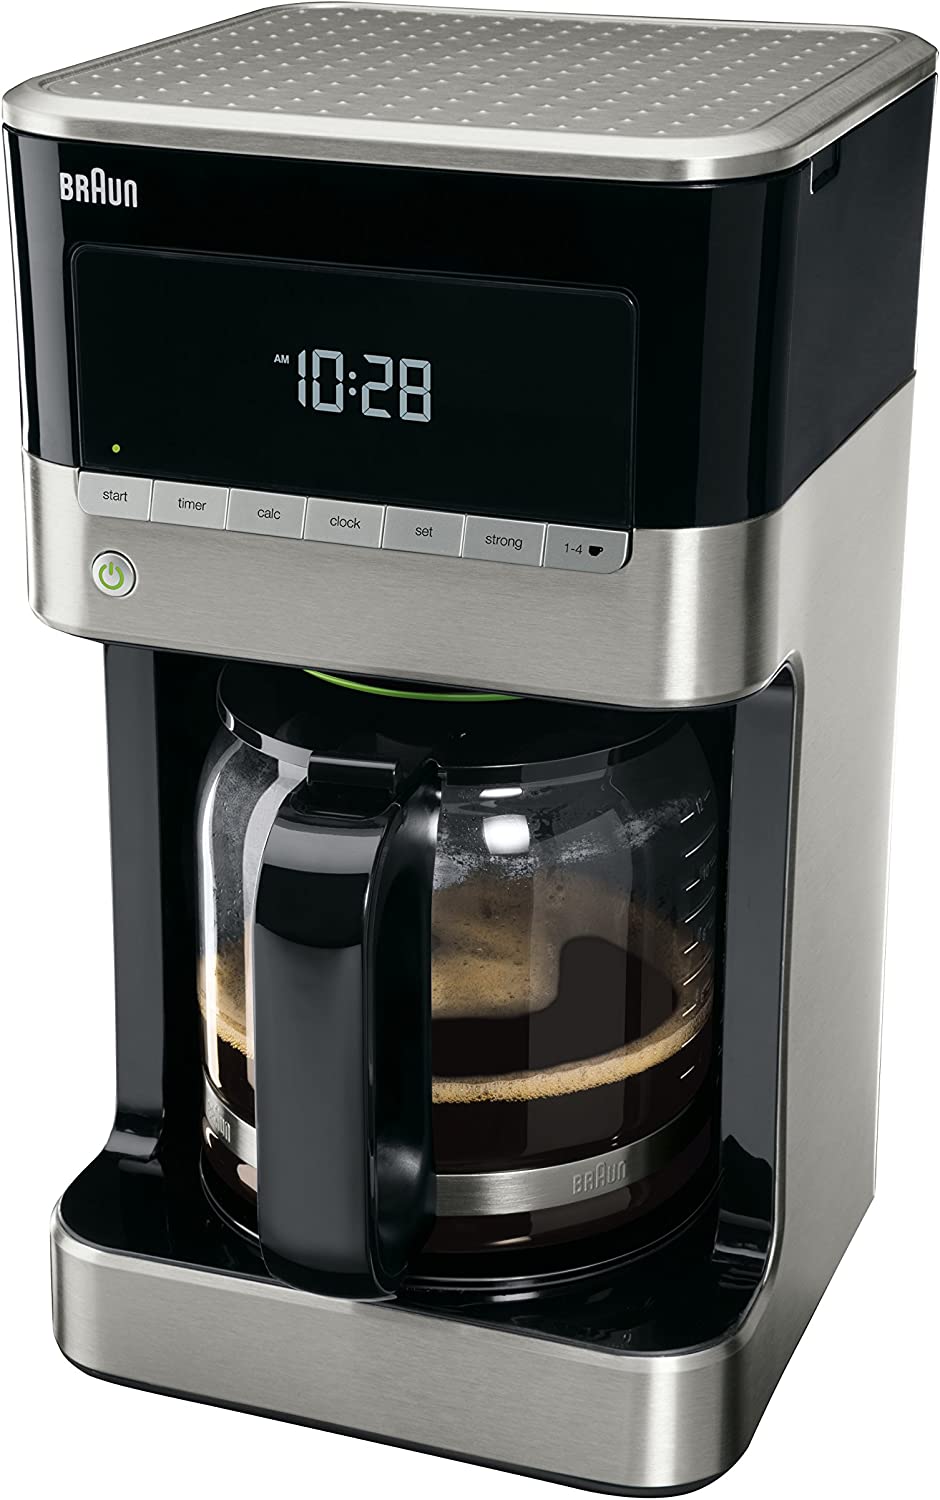 ماكينة صنع القهوة بالتنقيط من براون ، 12 كوب (اسود)